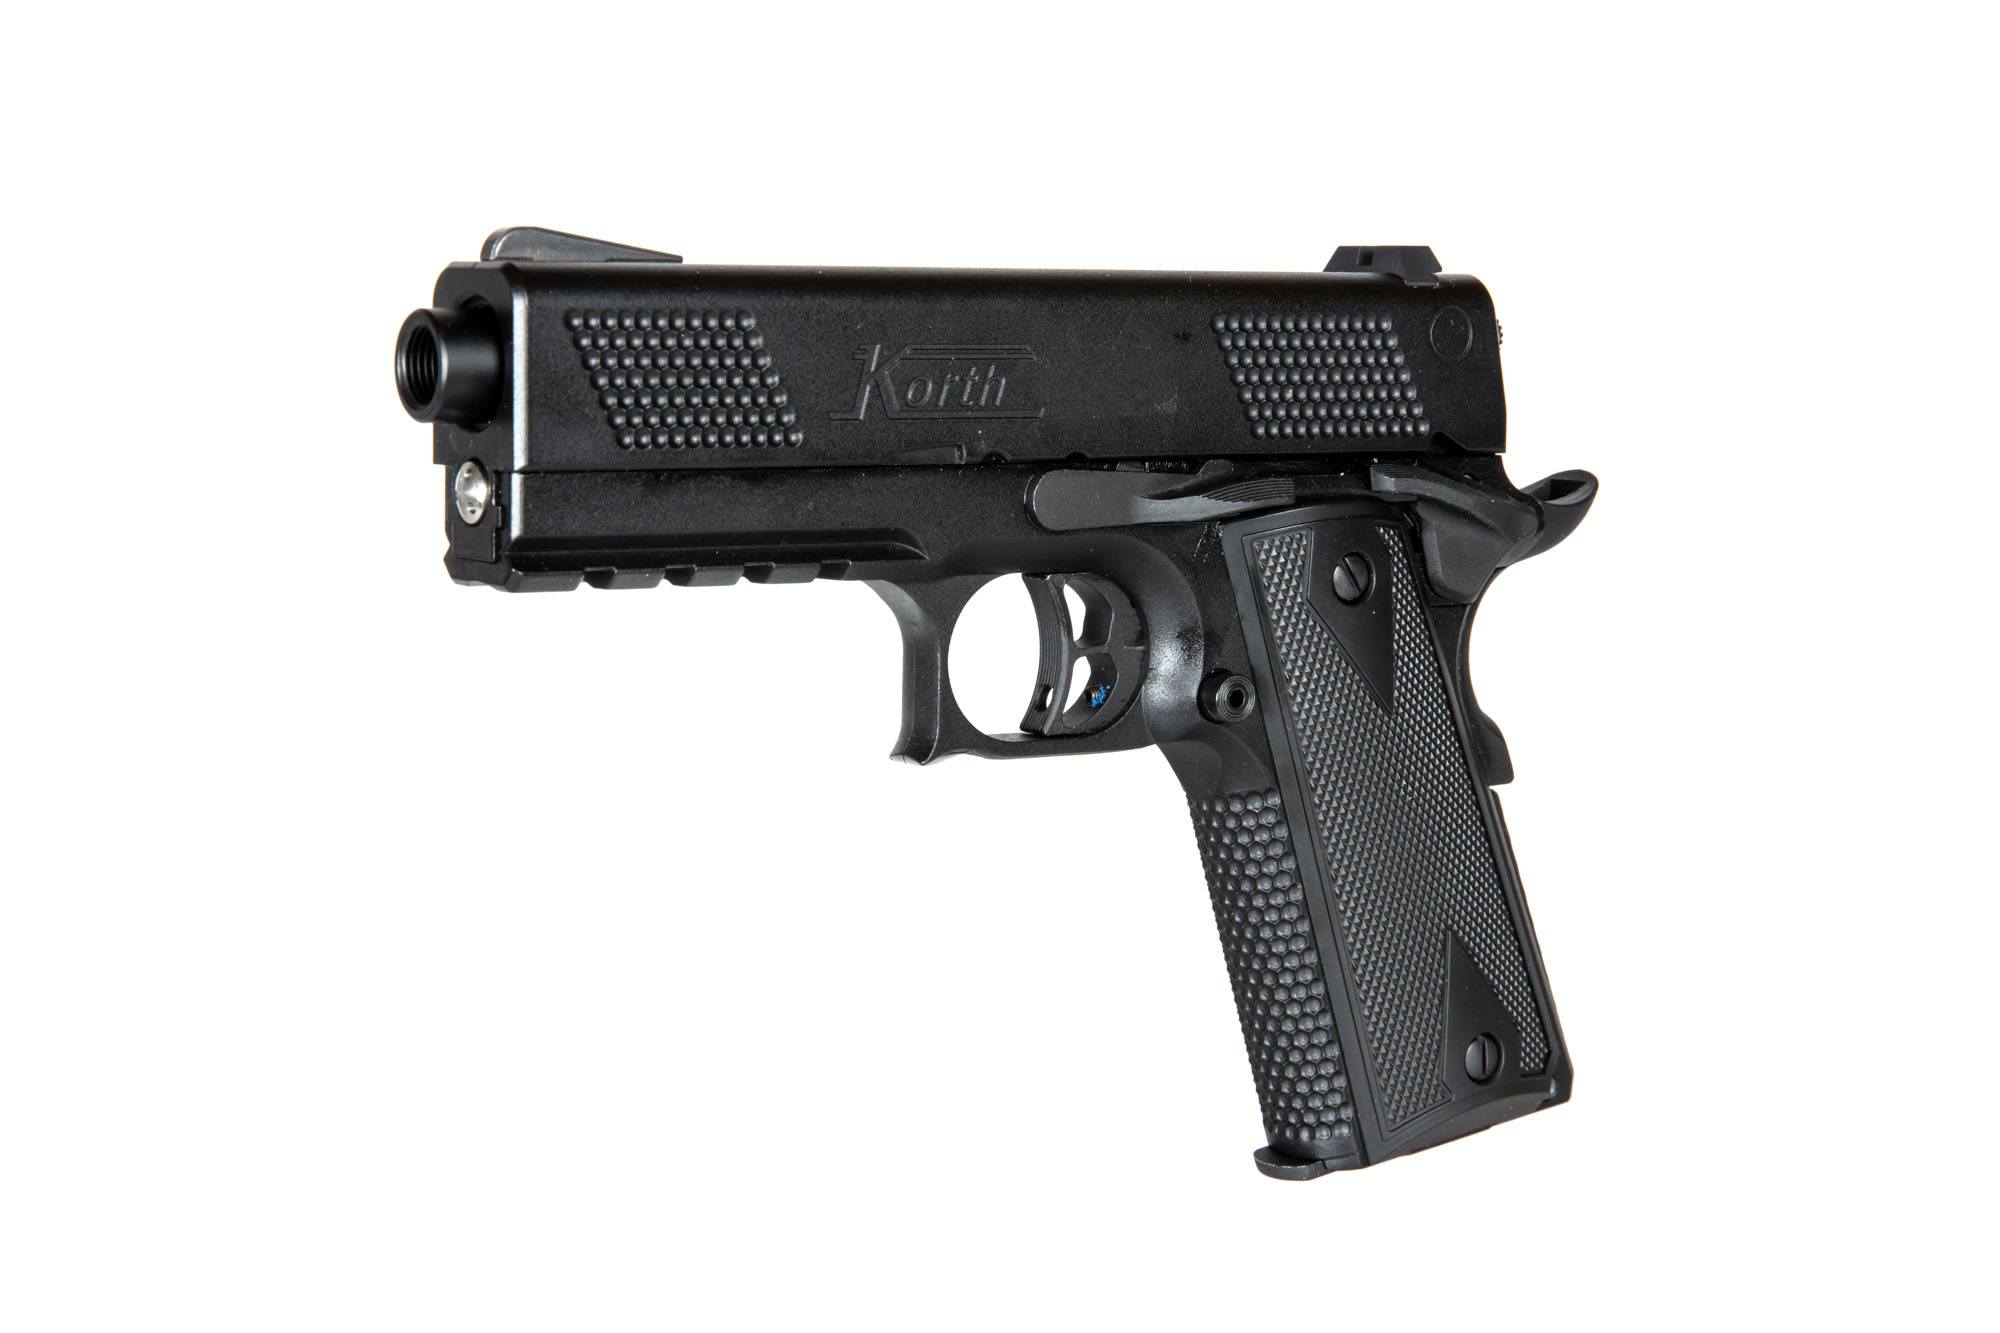 Korth PRS 4" gas pistol